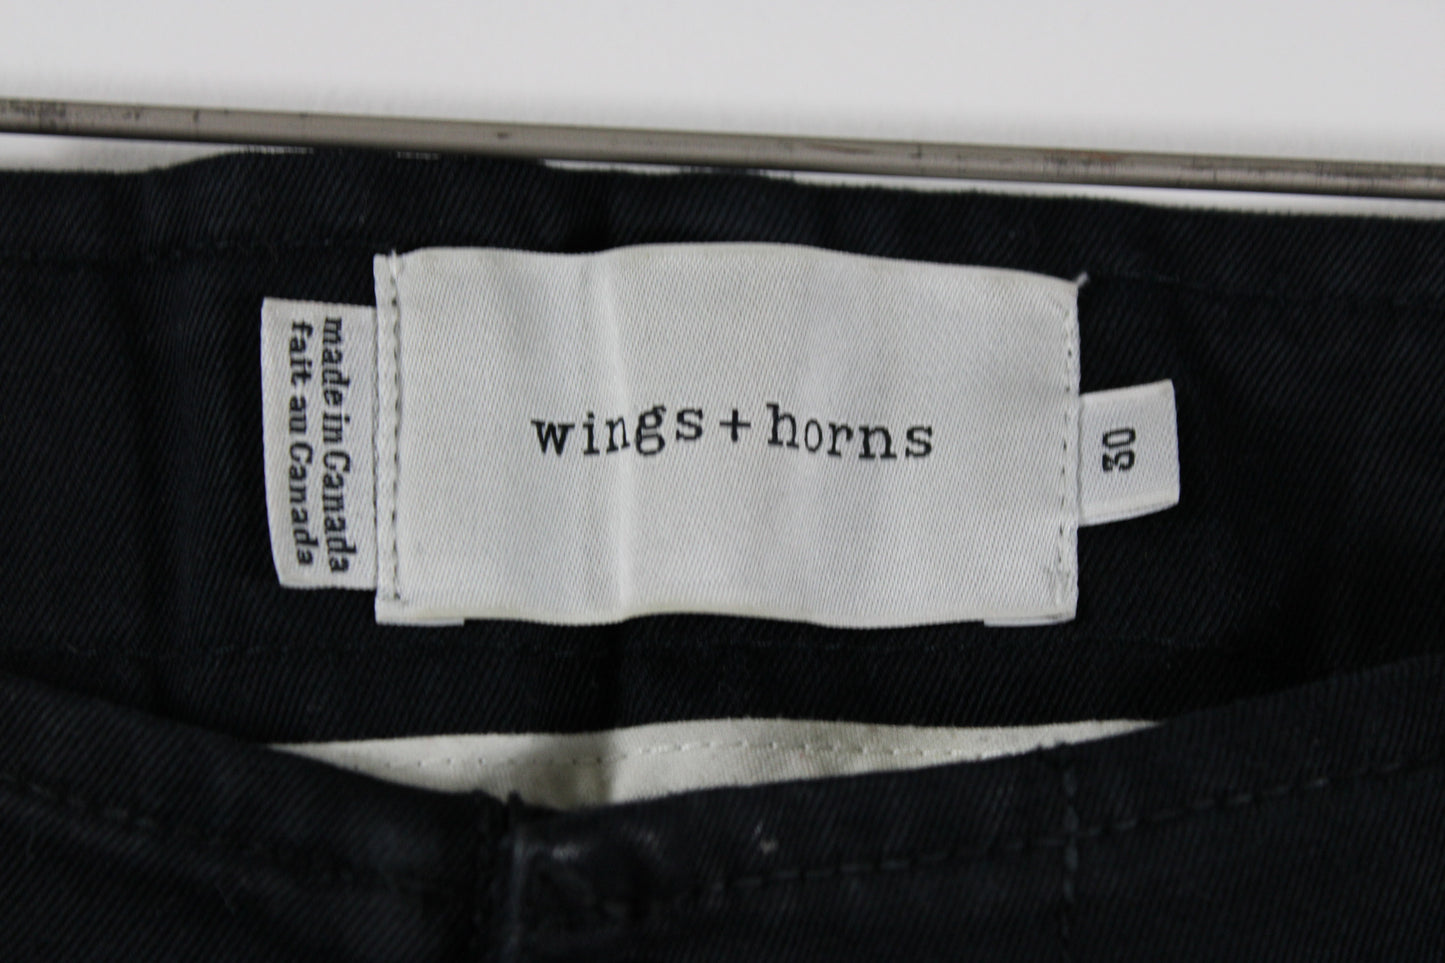 wings + horns Black Jeans